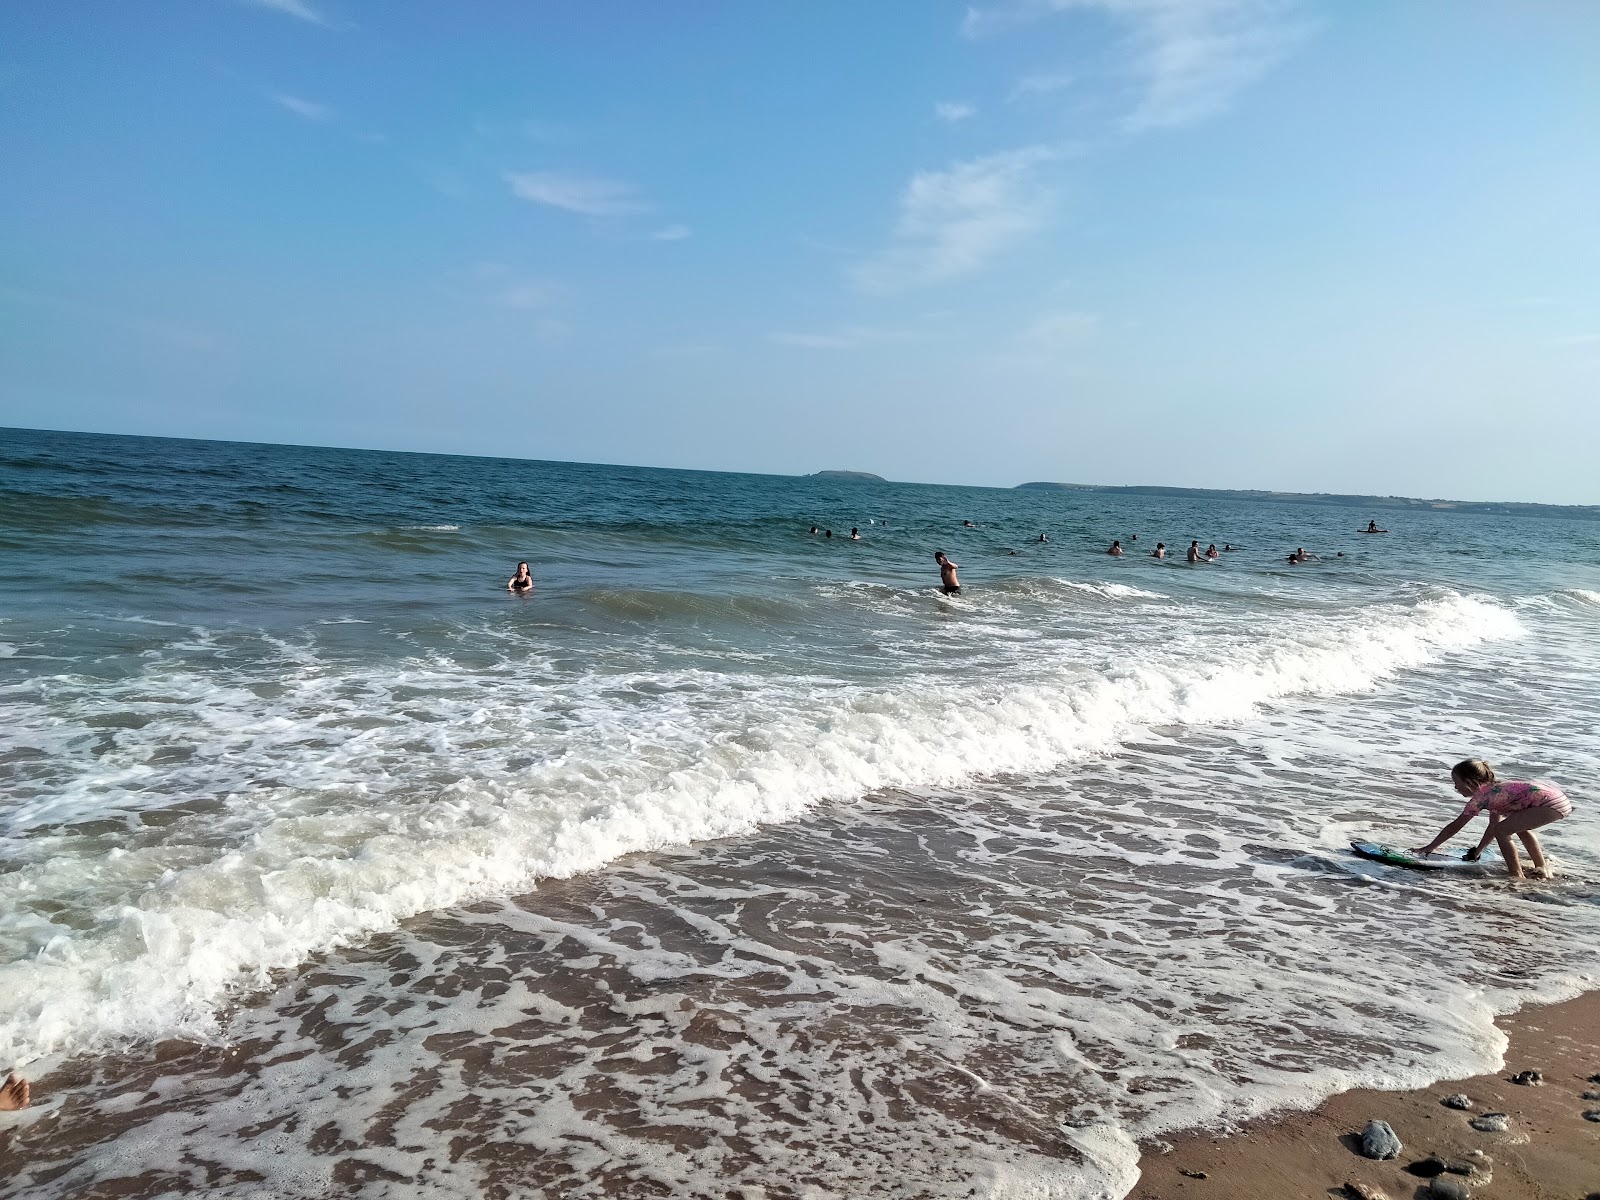 Youghal Beach'in fotoğrafı - rahatlamayı sevenler arasında popüler bir yer